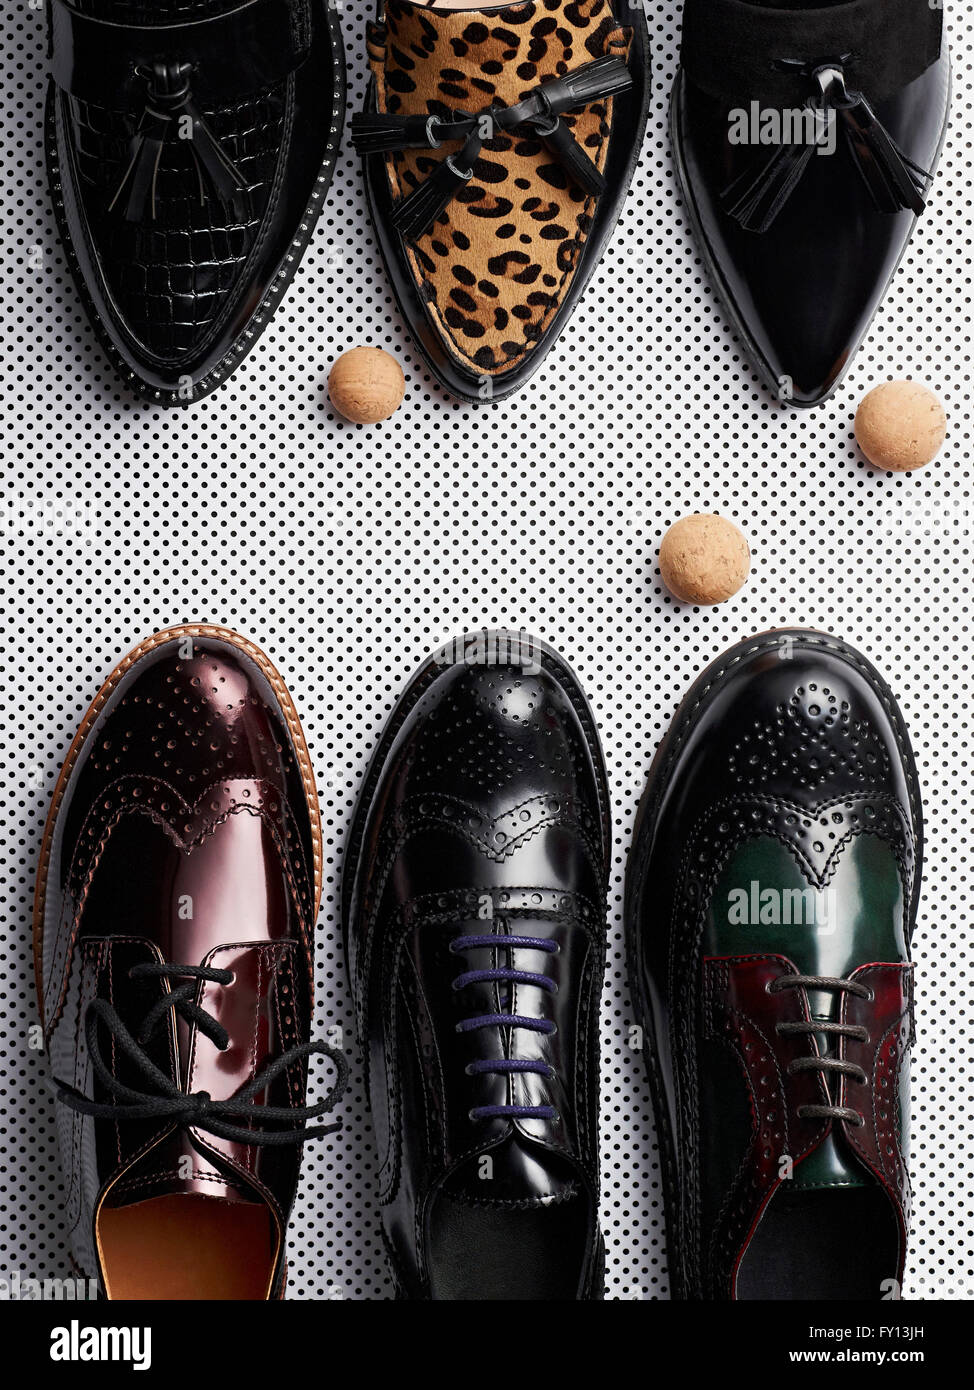 Men Formal Shoes | Buy Formal Shoes For Men Online at Best Prices – Alberto  Torresi